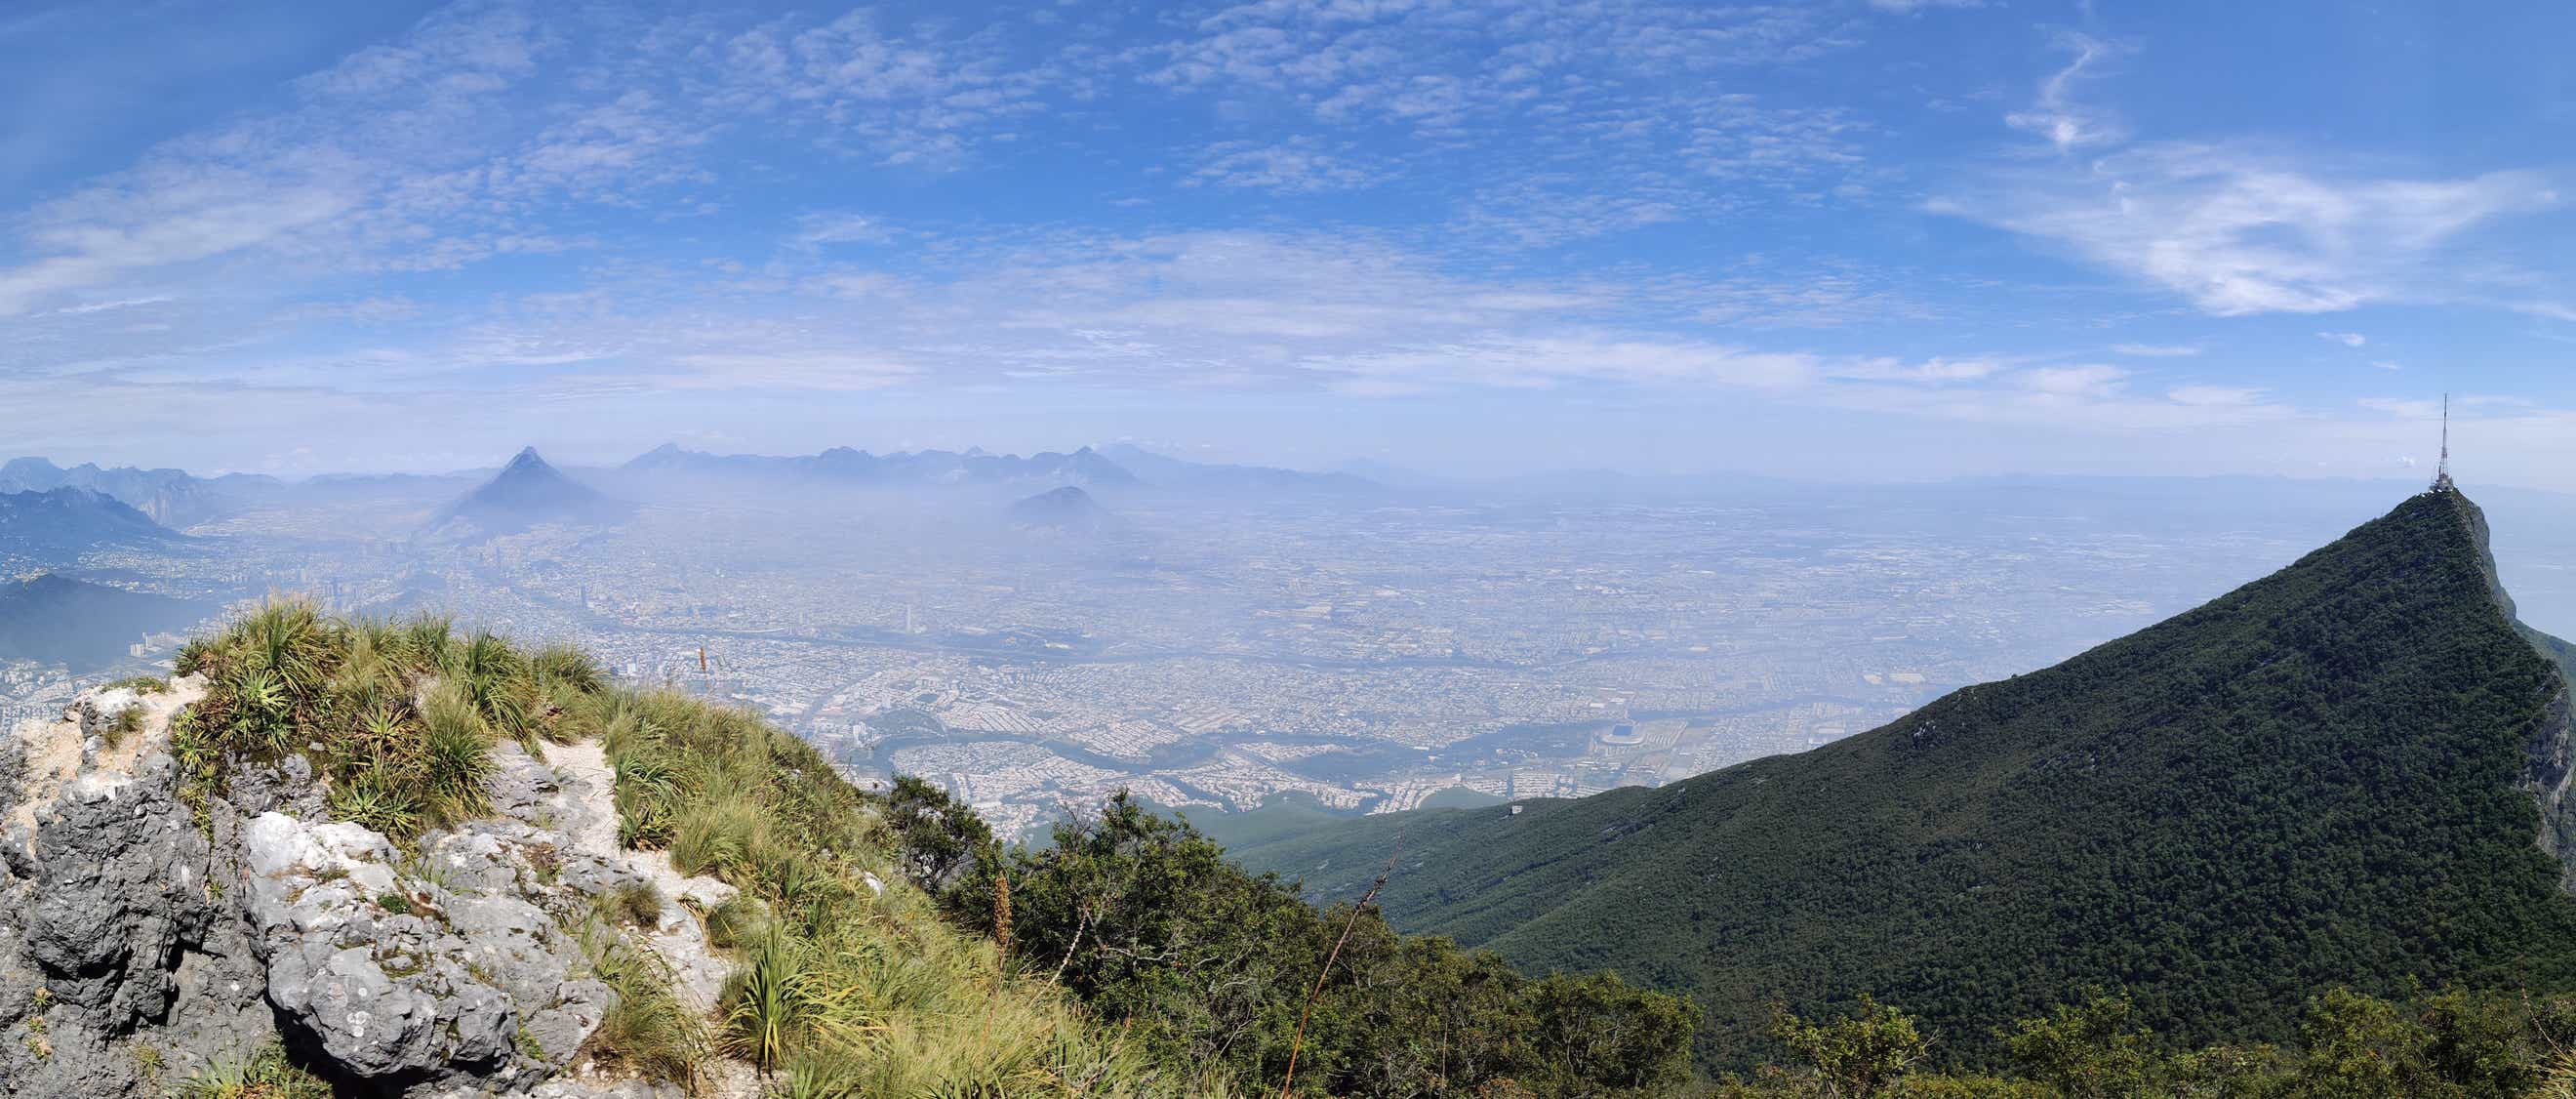 Blick auf die Stadt Monterrey vom Gipfel des Hausbergs Cerro de la Silla.